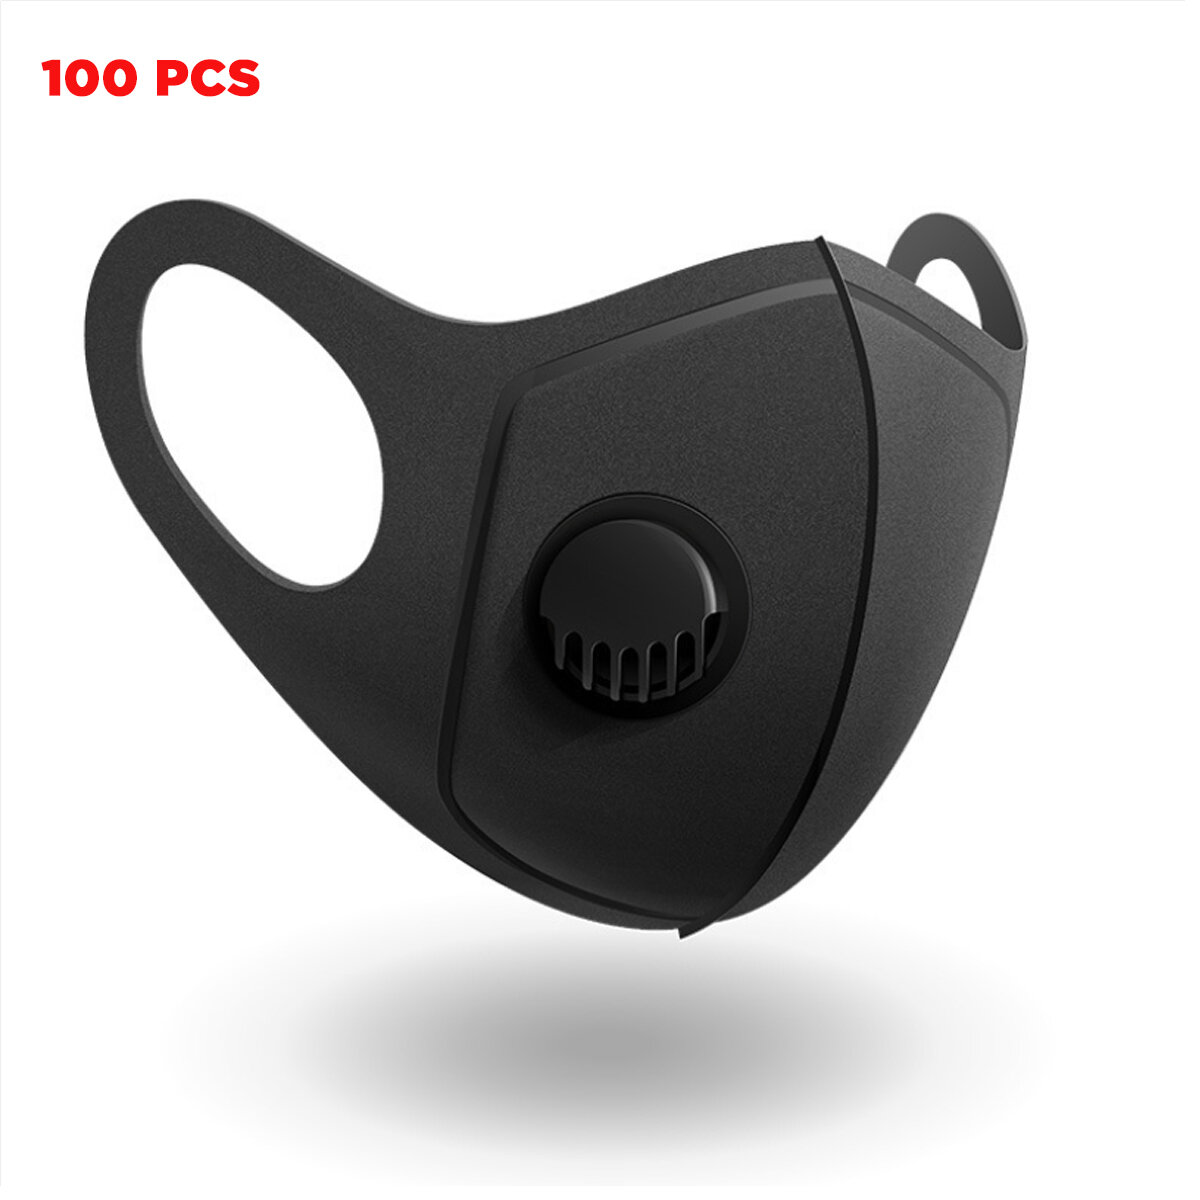 キャンプ旅行サイクリング用の3層フィルター通気性抗ダスト口マスクの100個PM2.5フェイスマスク